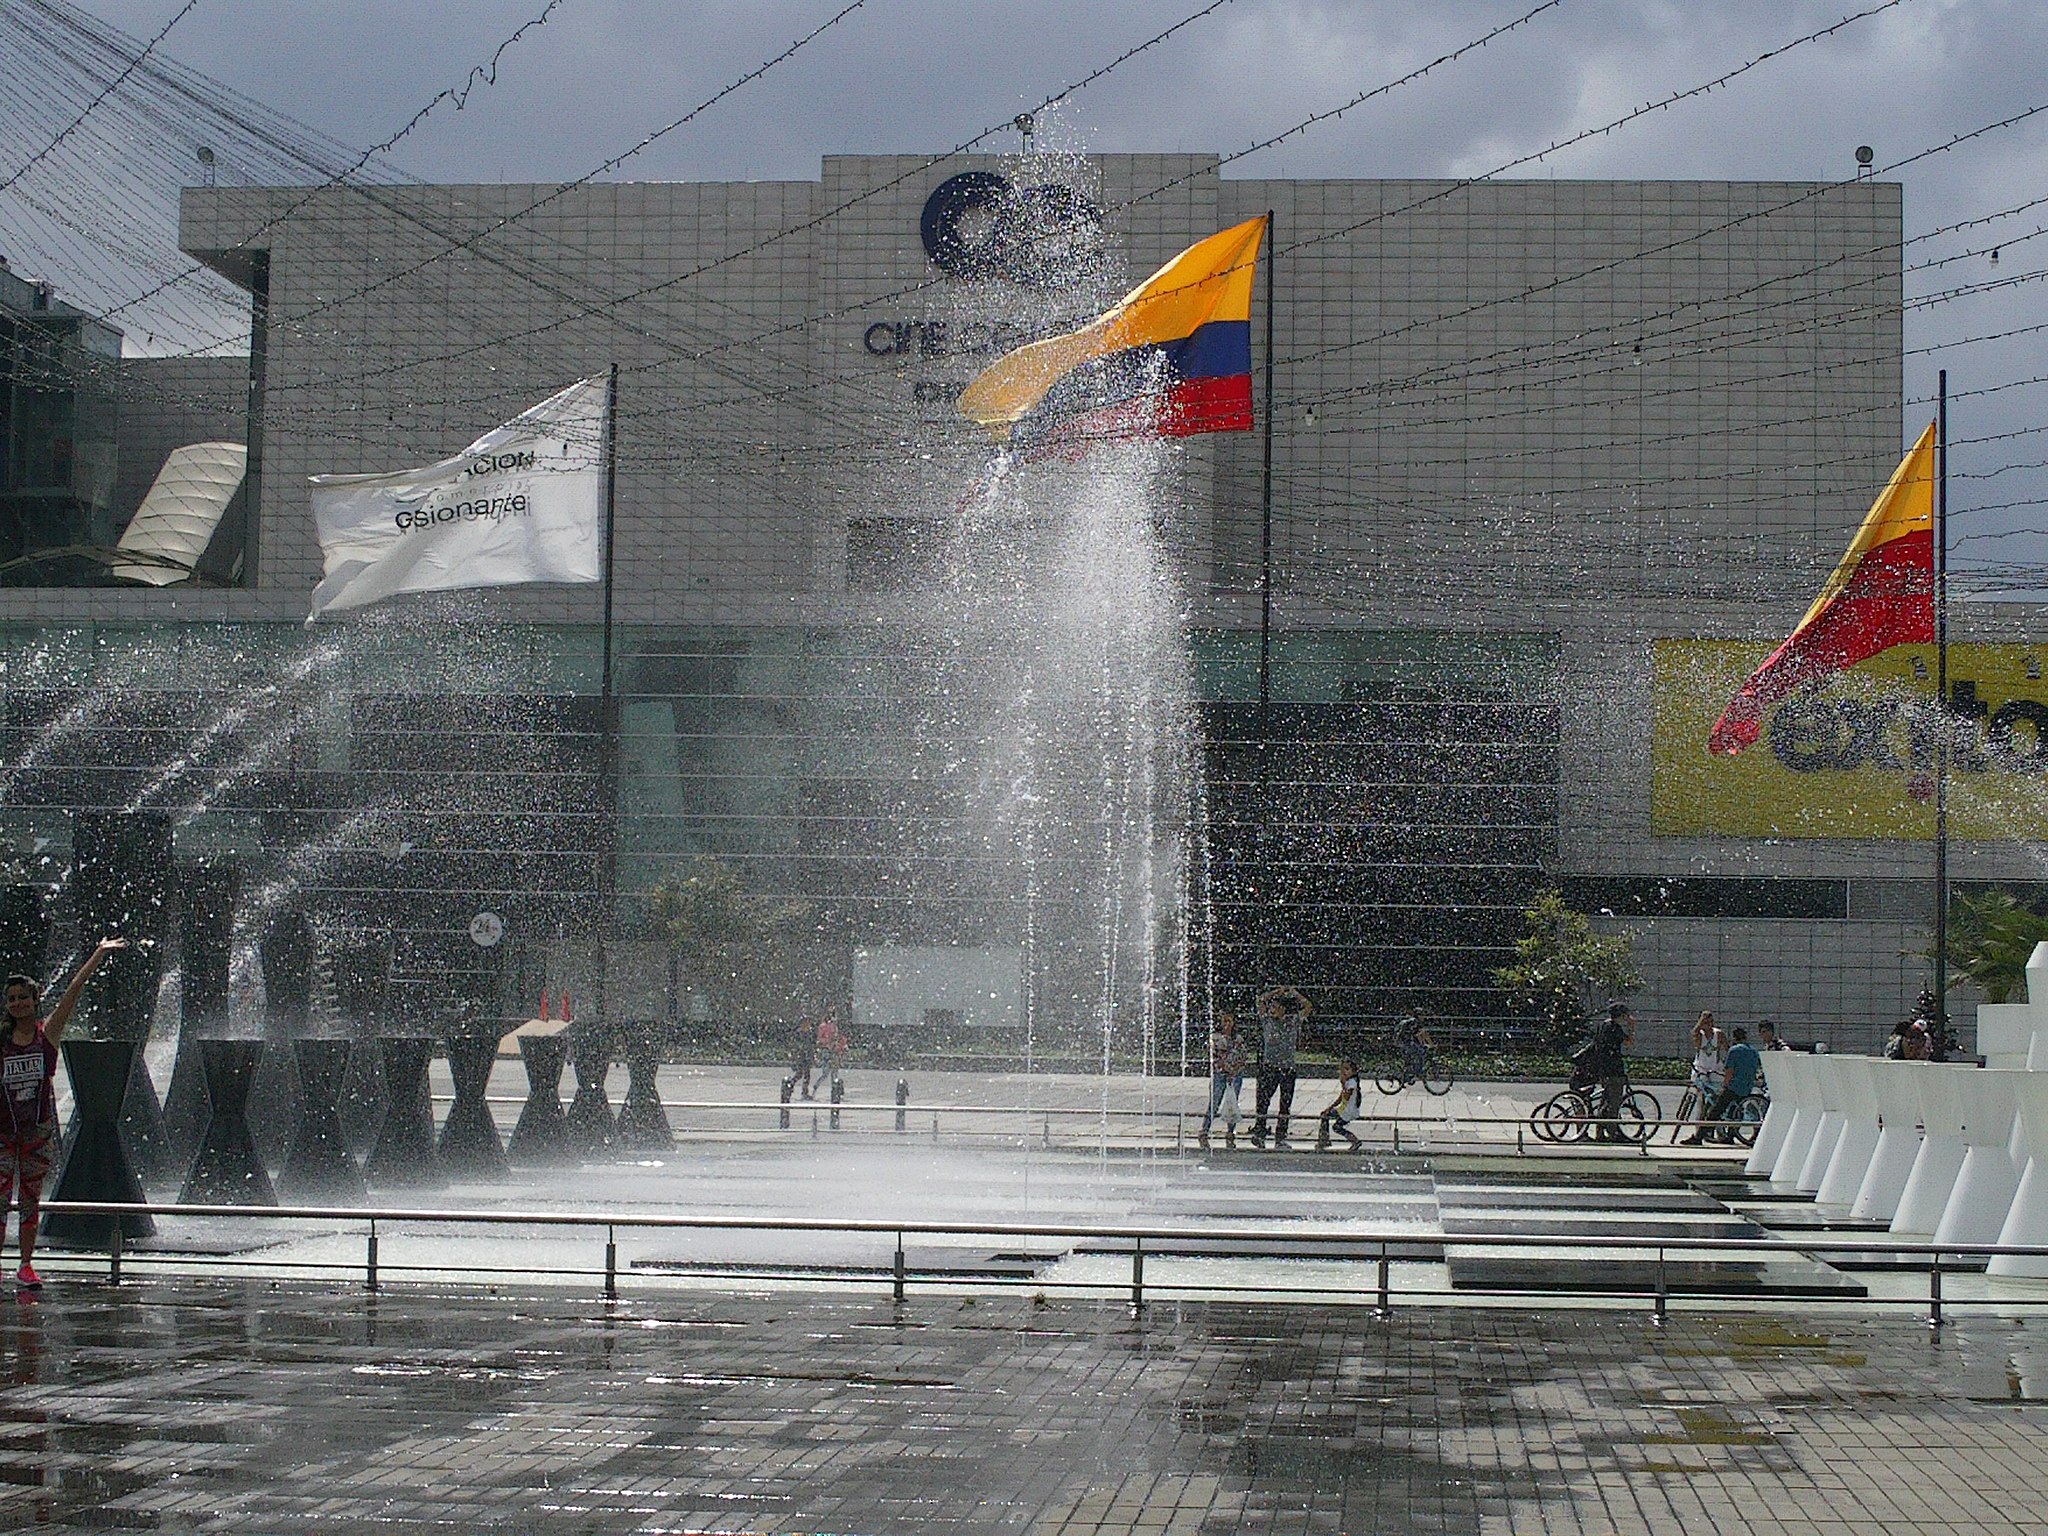 Dispatches: Gran Estación Plaza, Bogotá